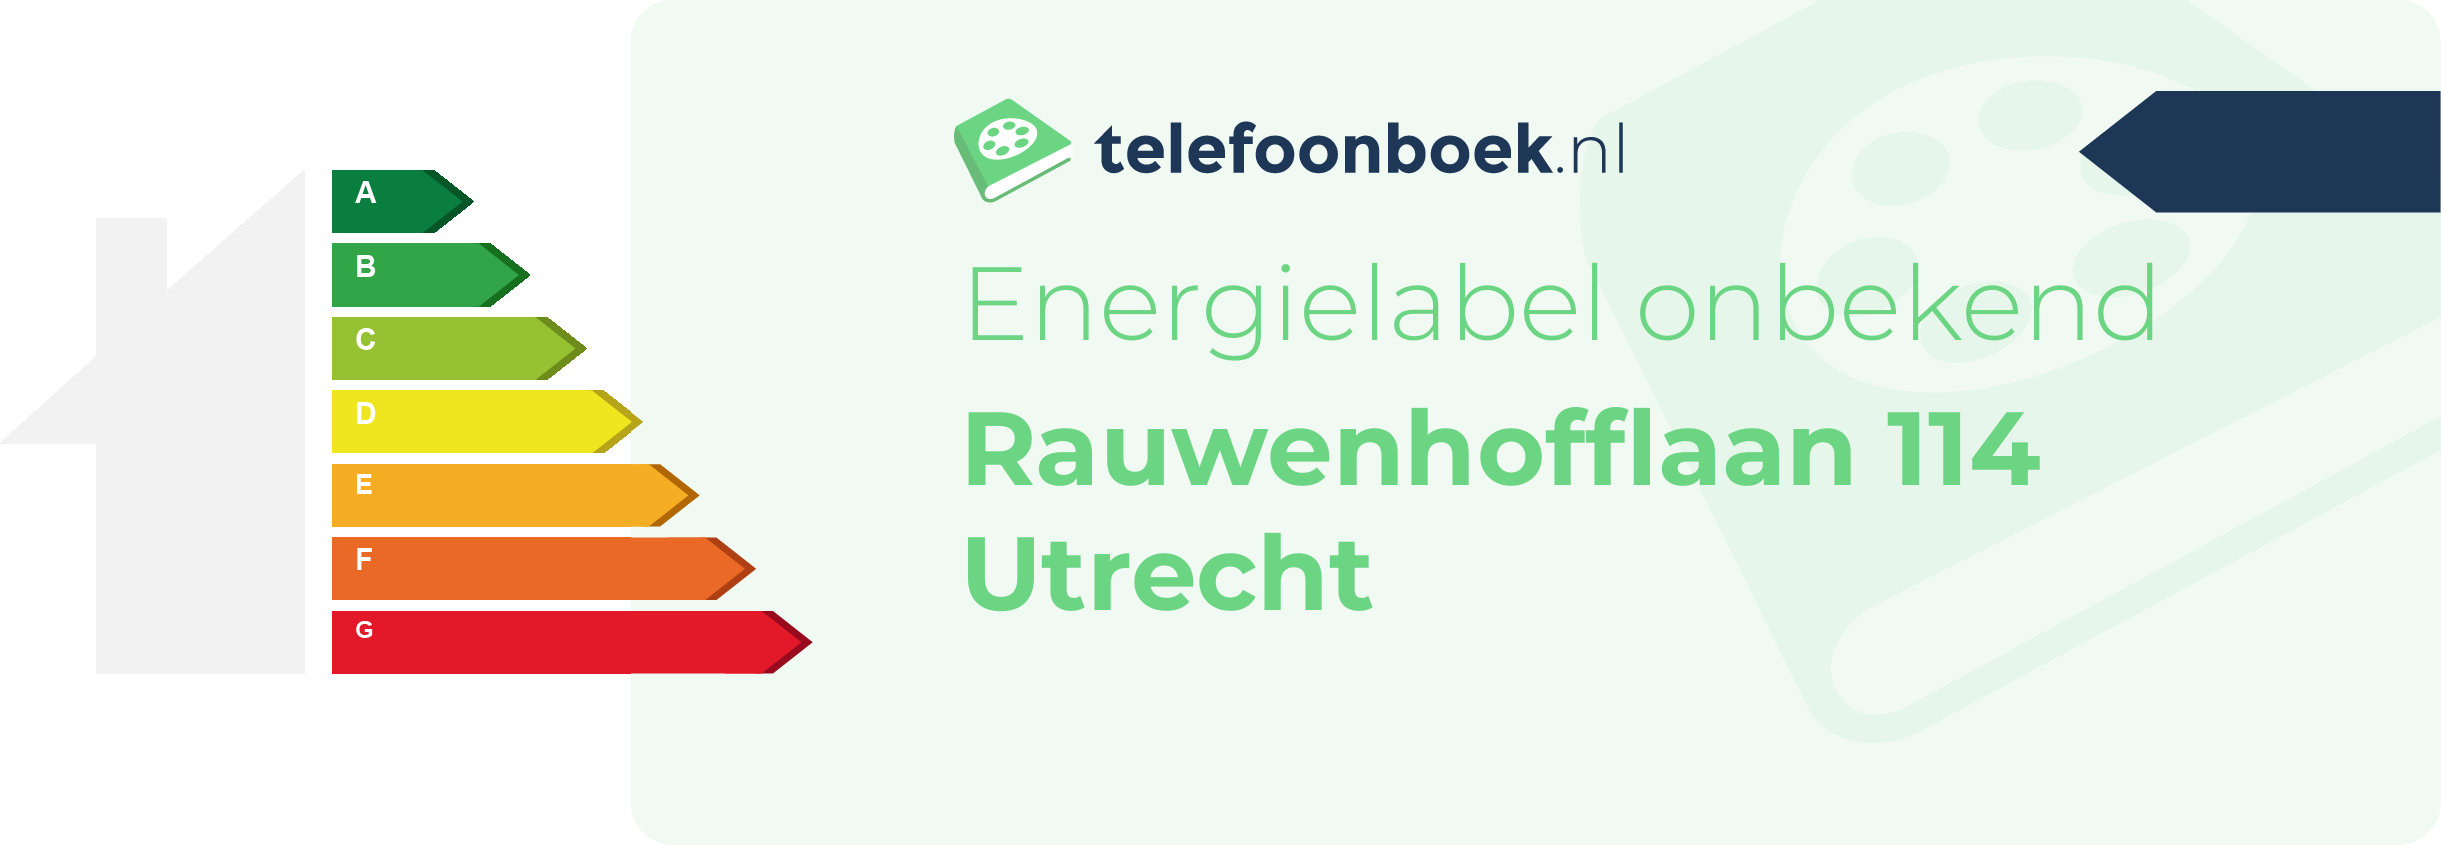 Energielabel Rauwenhofflaan 114 Utrecht